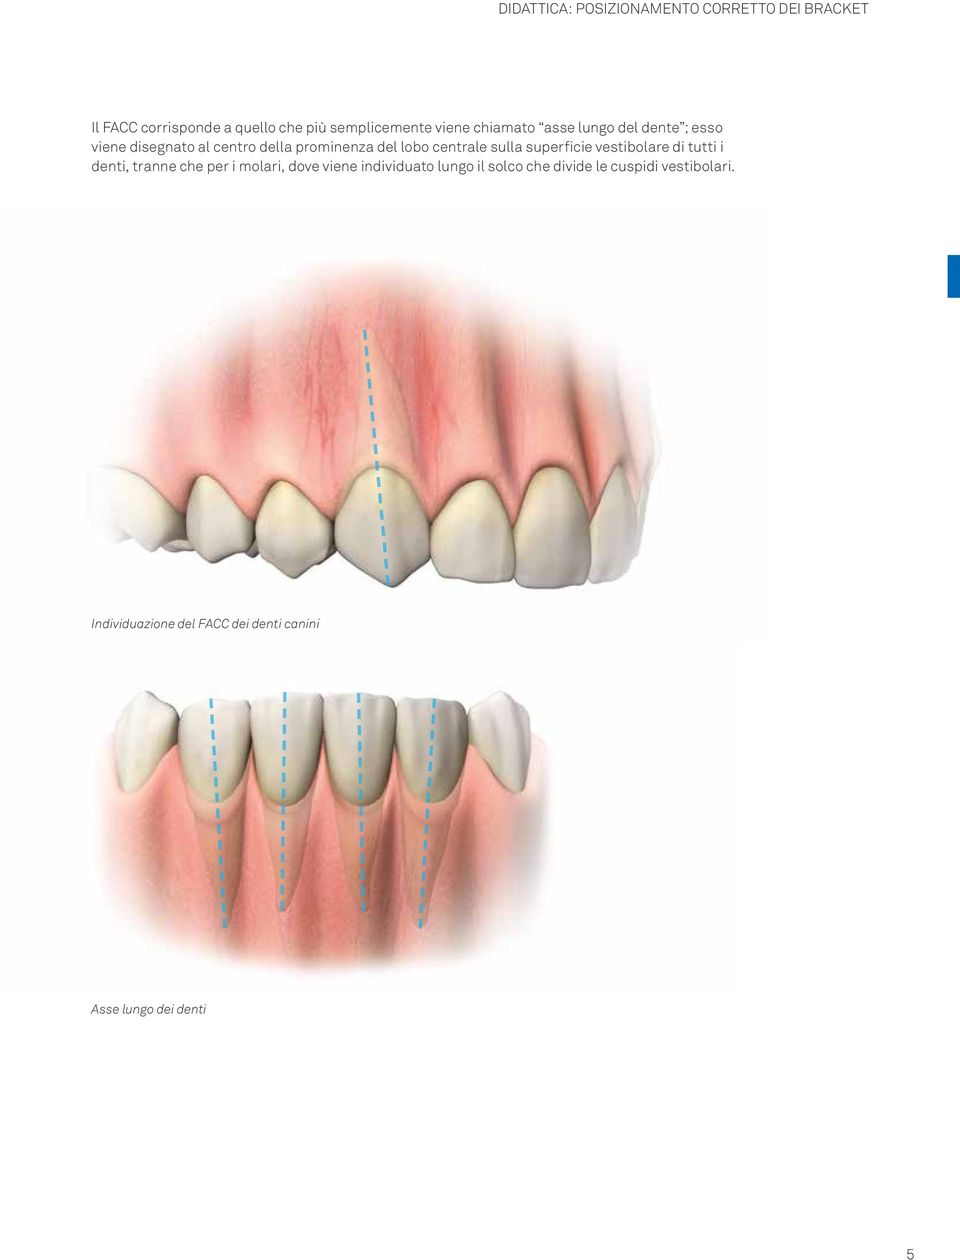 centrale sulla superficie vestibolare tutti i denti, tranne che per i molari, dove viene inviduato